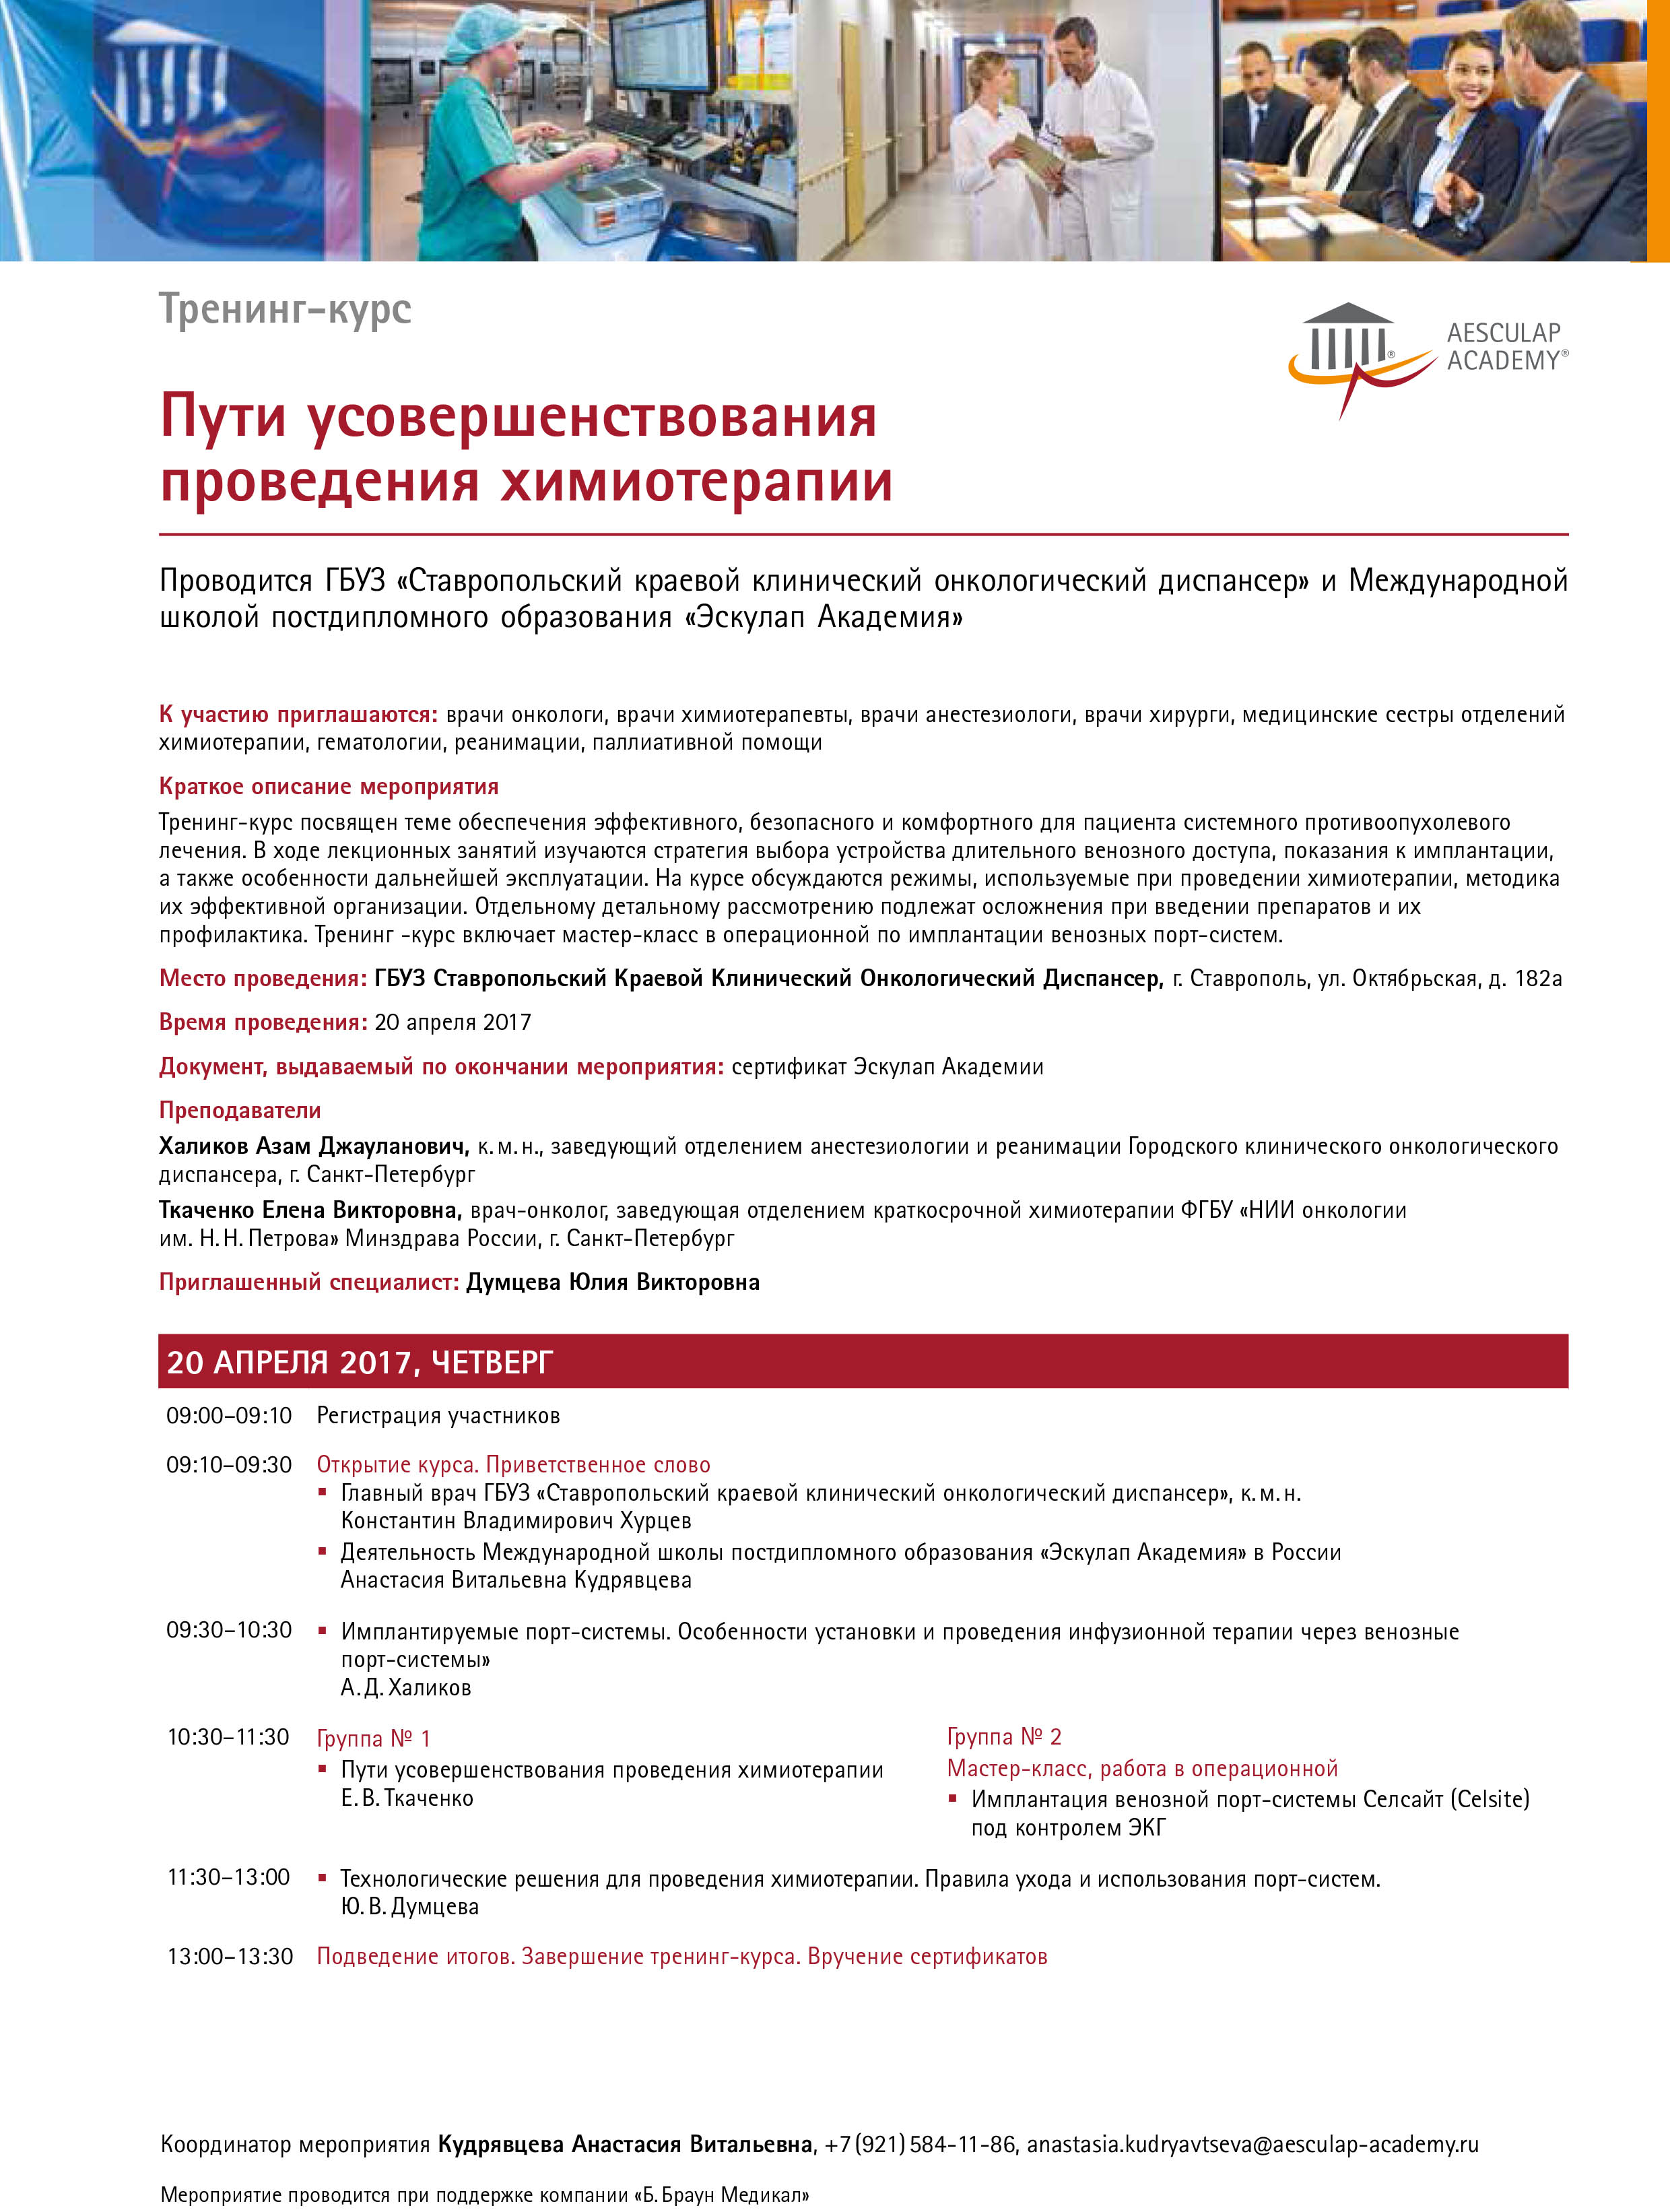 Program. Stavropol. 20.04.17. Chemo